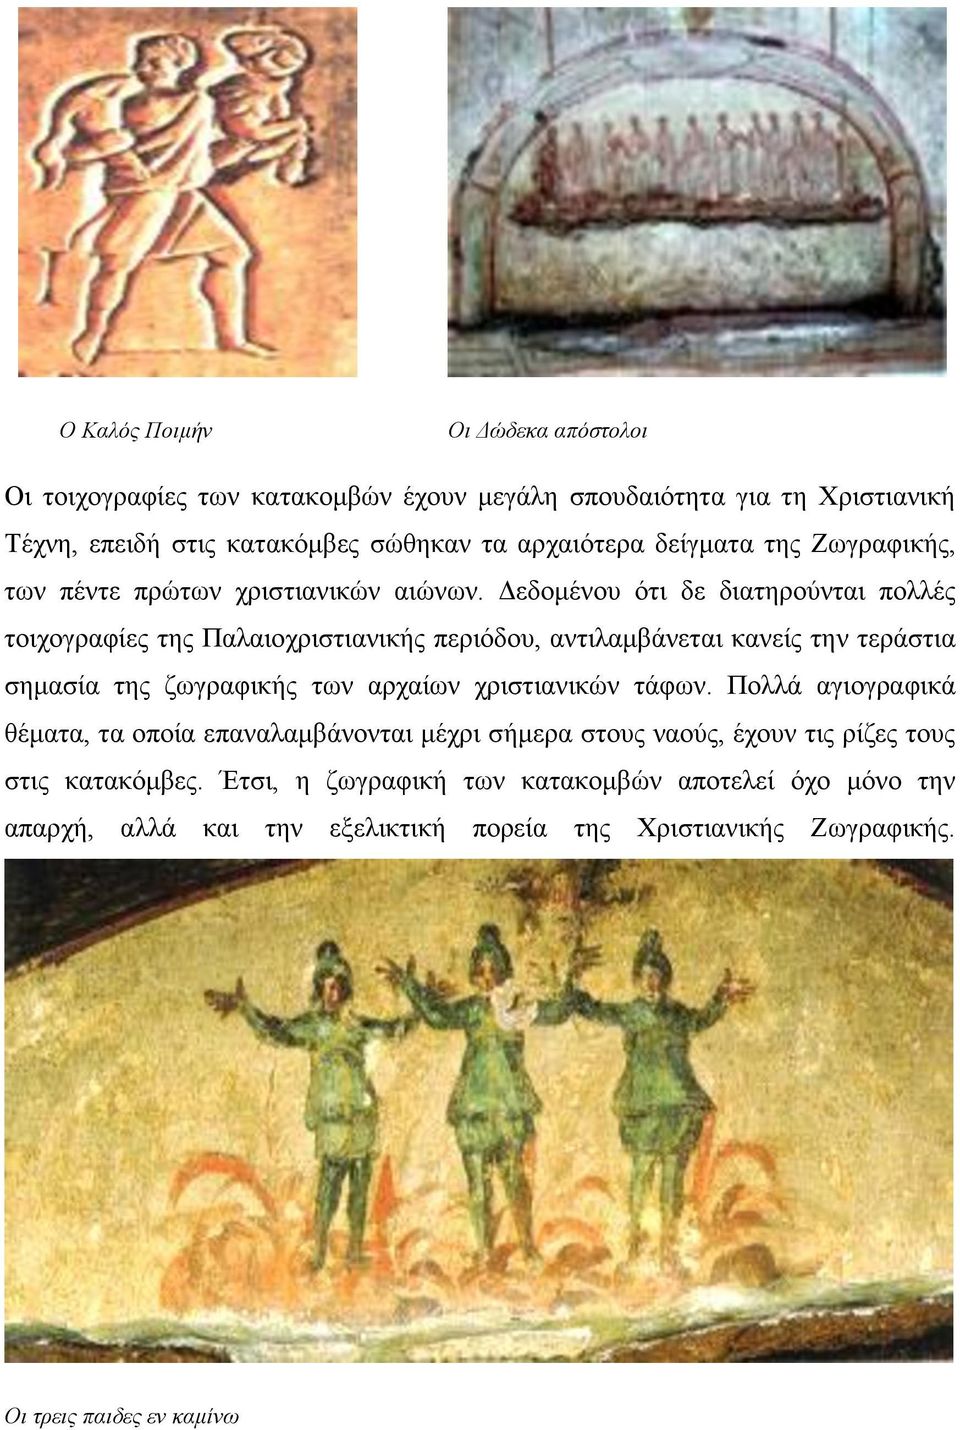 Δεδομένου ότι δε διατηρούνται πολλές τοιχογραφίες της Παλαιοχριστιανικής περιόδου, αντιλαμβάνεται κανείς την τεράστια σημασία της ζωγραφικής των αρχαίων χριστιανικών